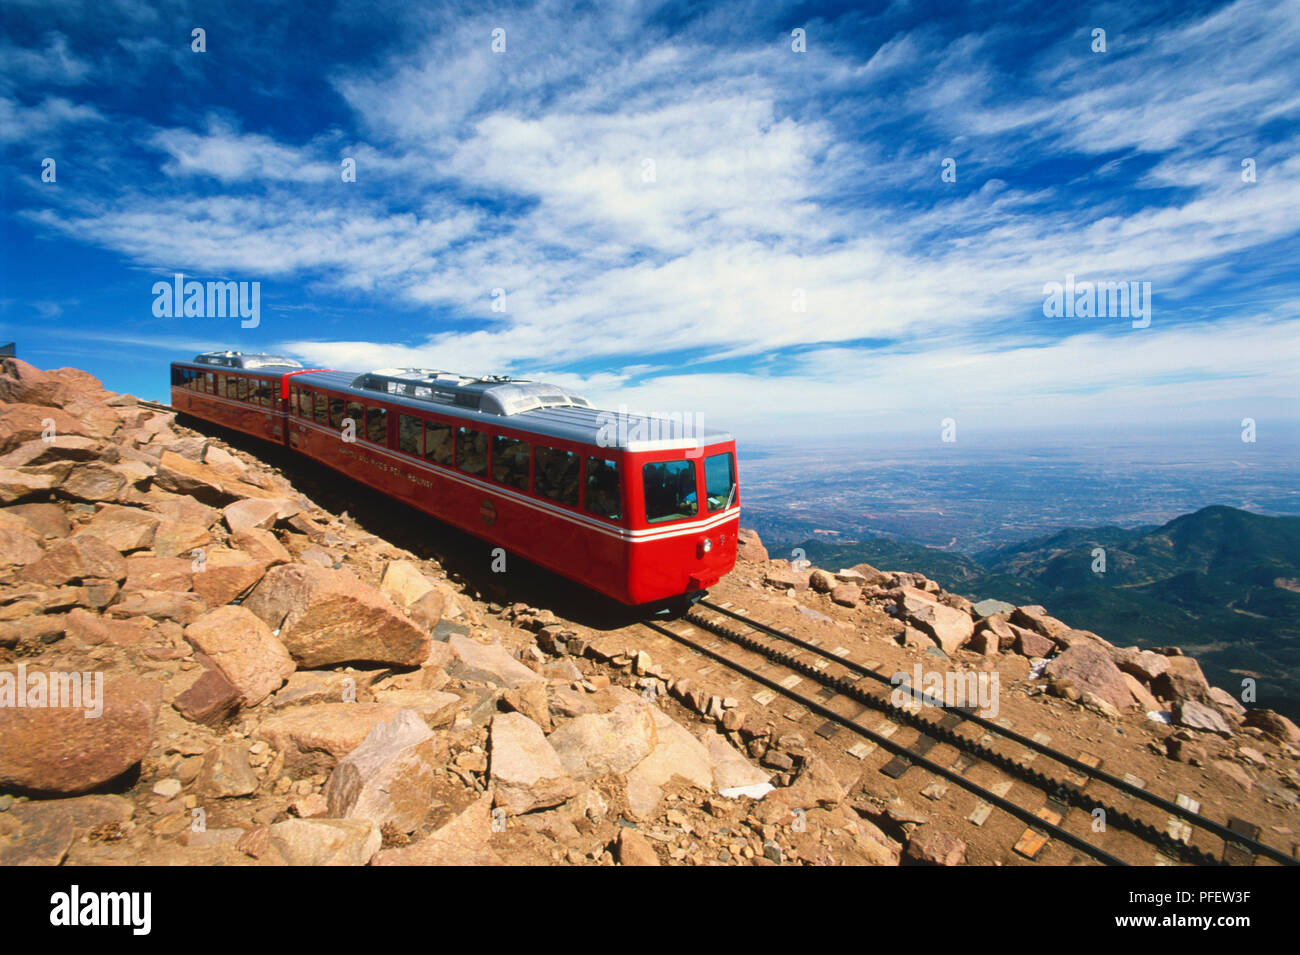 USA, Colorado, Manitou Springs, Pikes Peak Cog Railway, historic train atop mountain Stock Photo